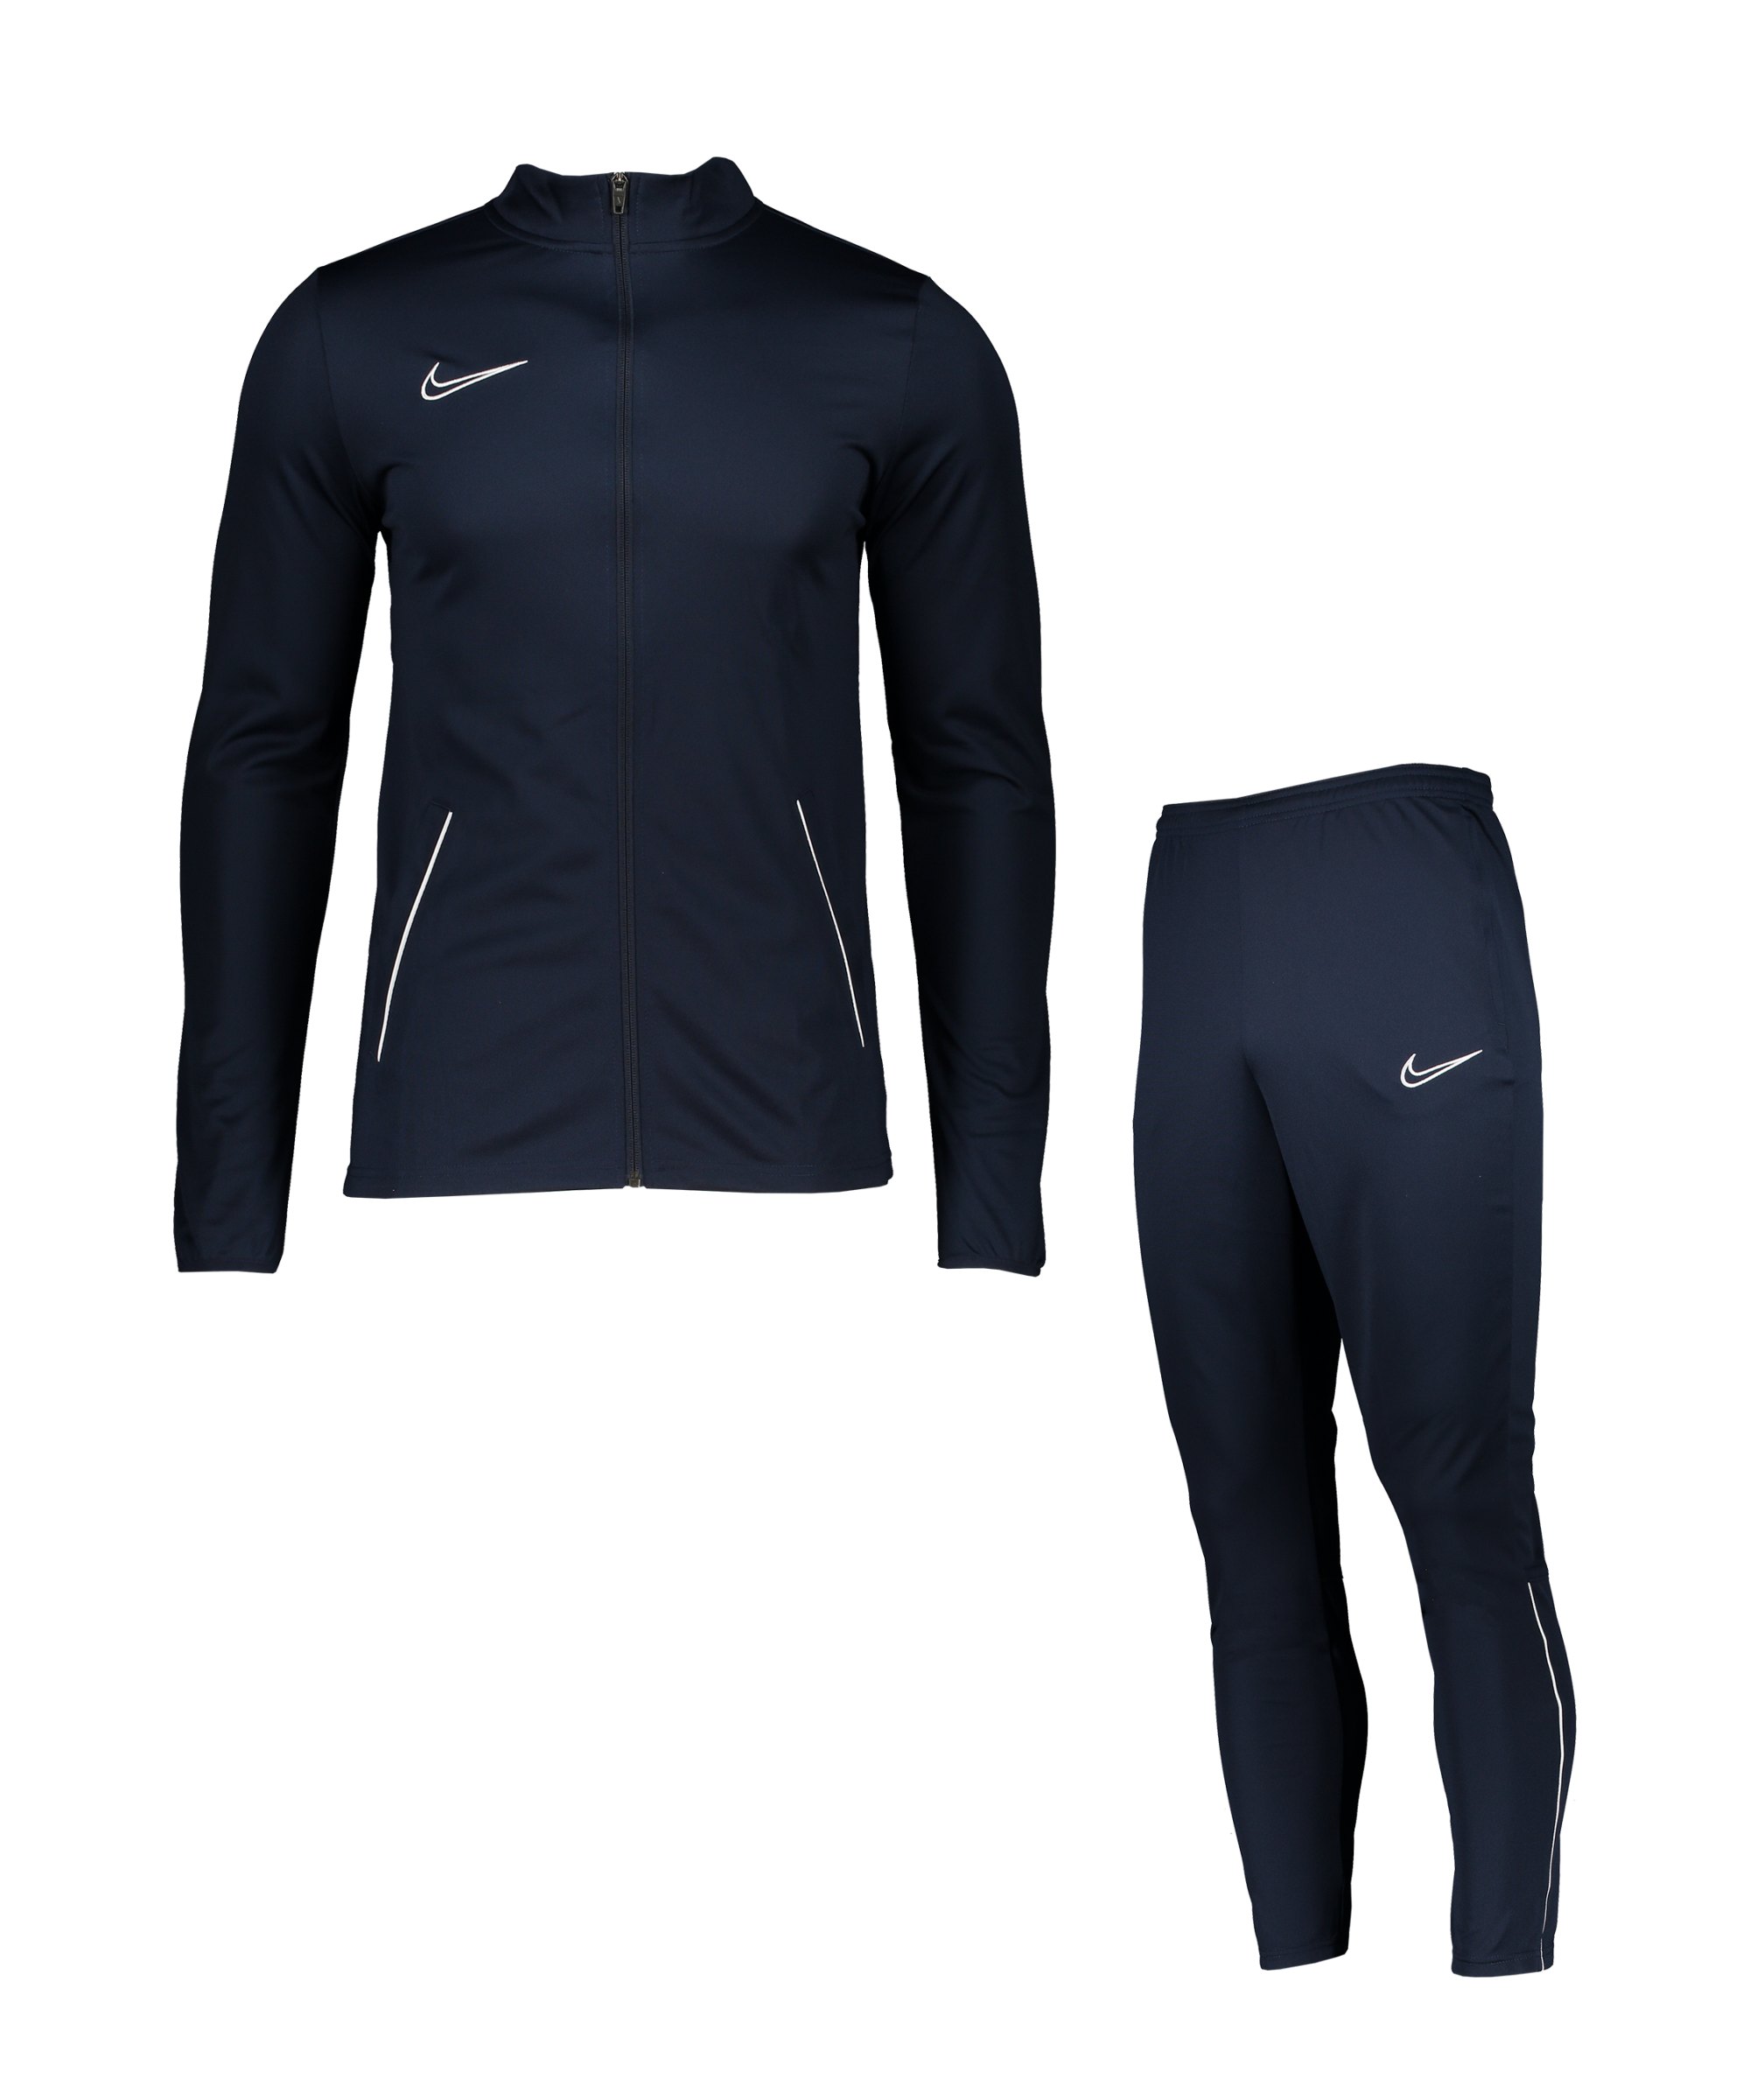 Nike Academy 21 Trainingsanzug Blau Weiss F451 - blau